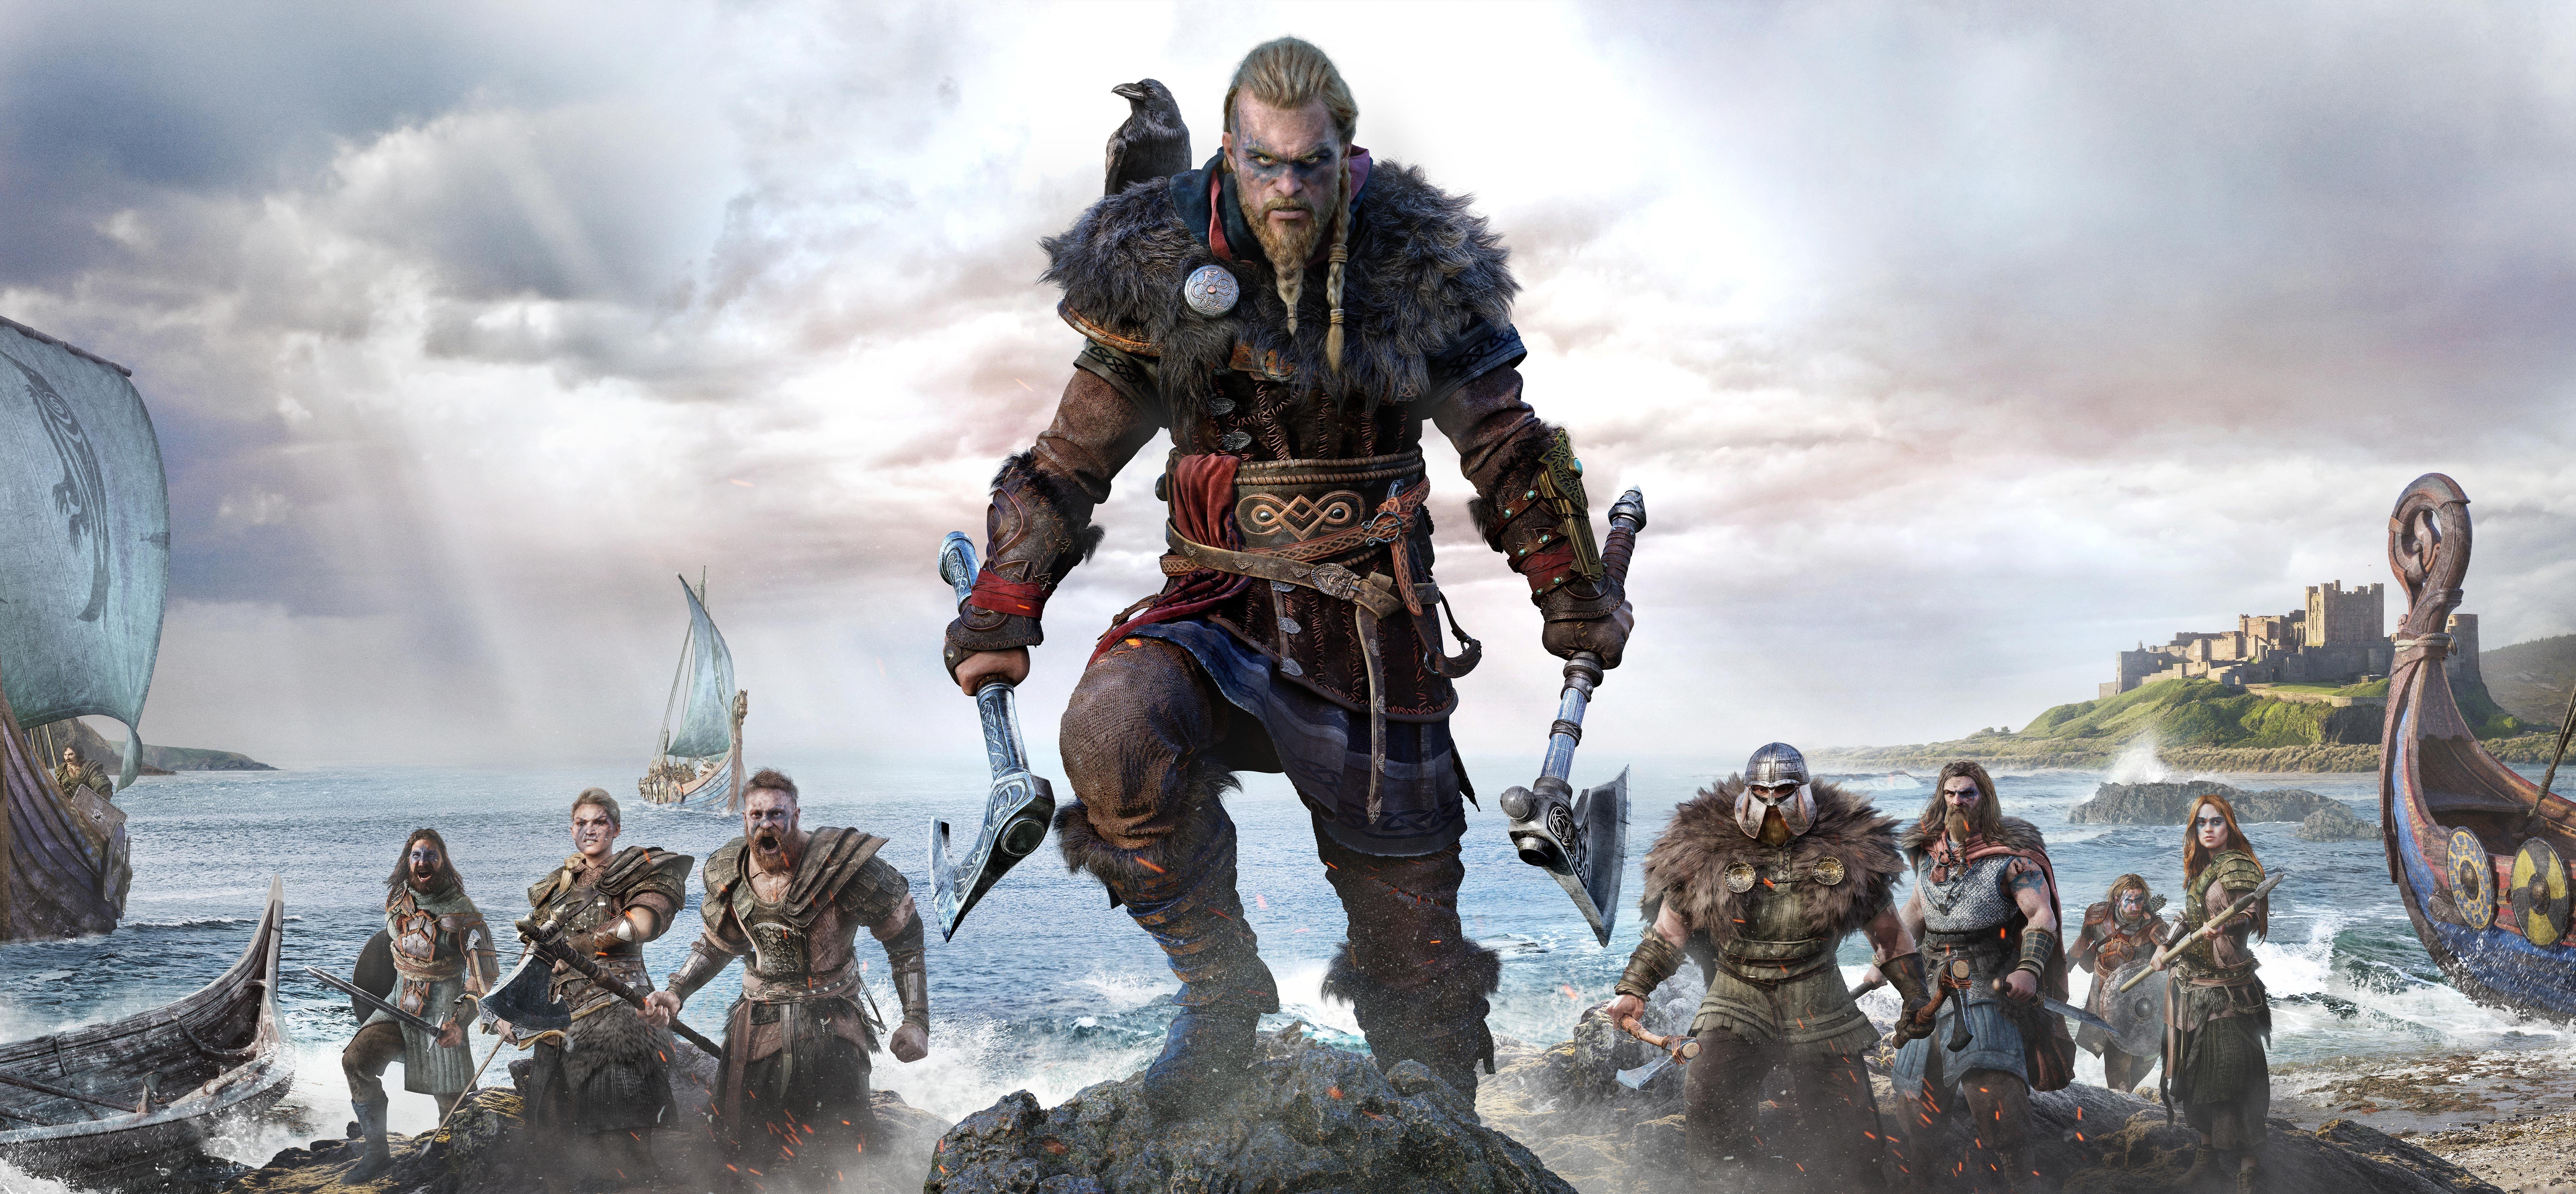 7840x3635 Ragnar Lothbrok Assassins Creed Valhalla 8k, HD Games, 4k